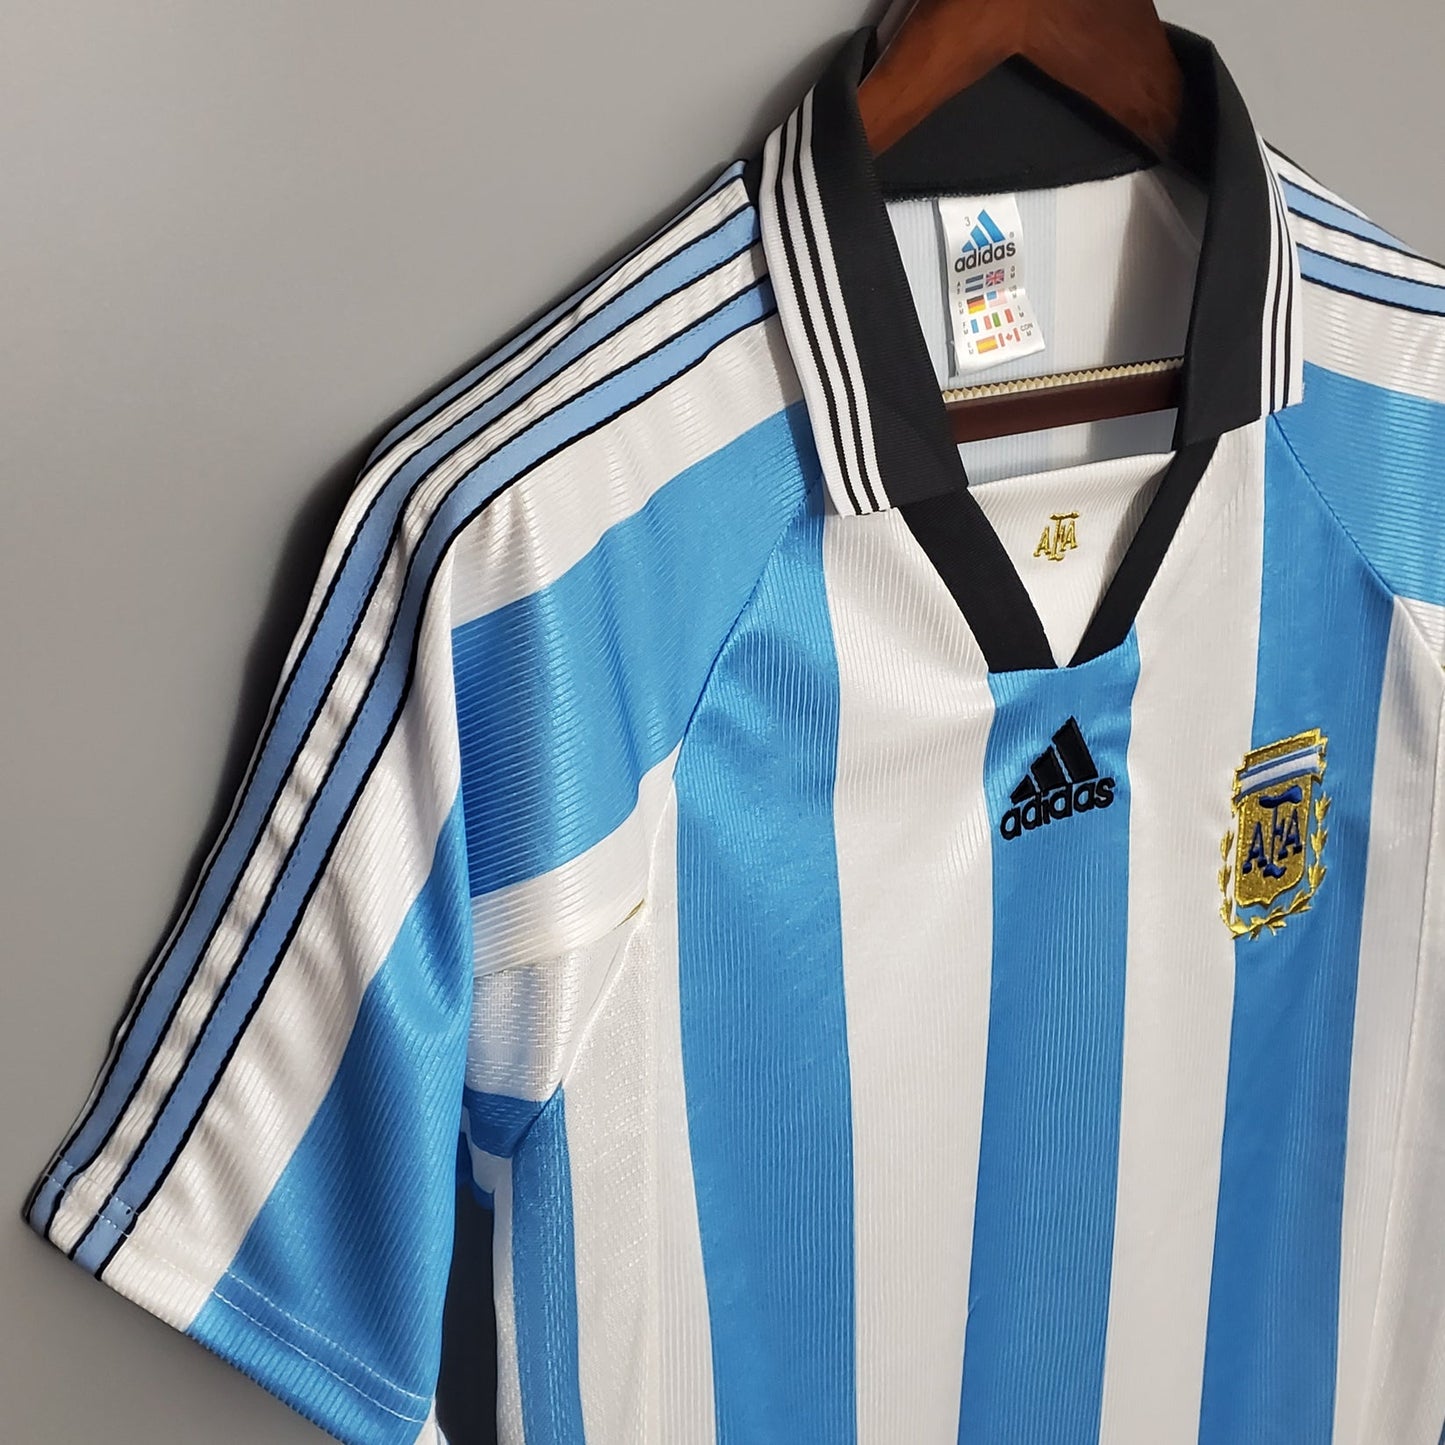 Argentina Local 1998